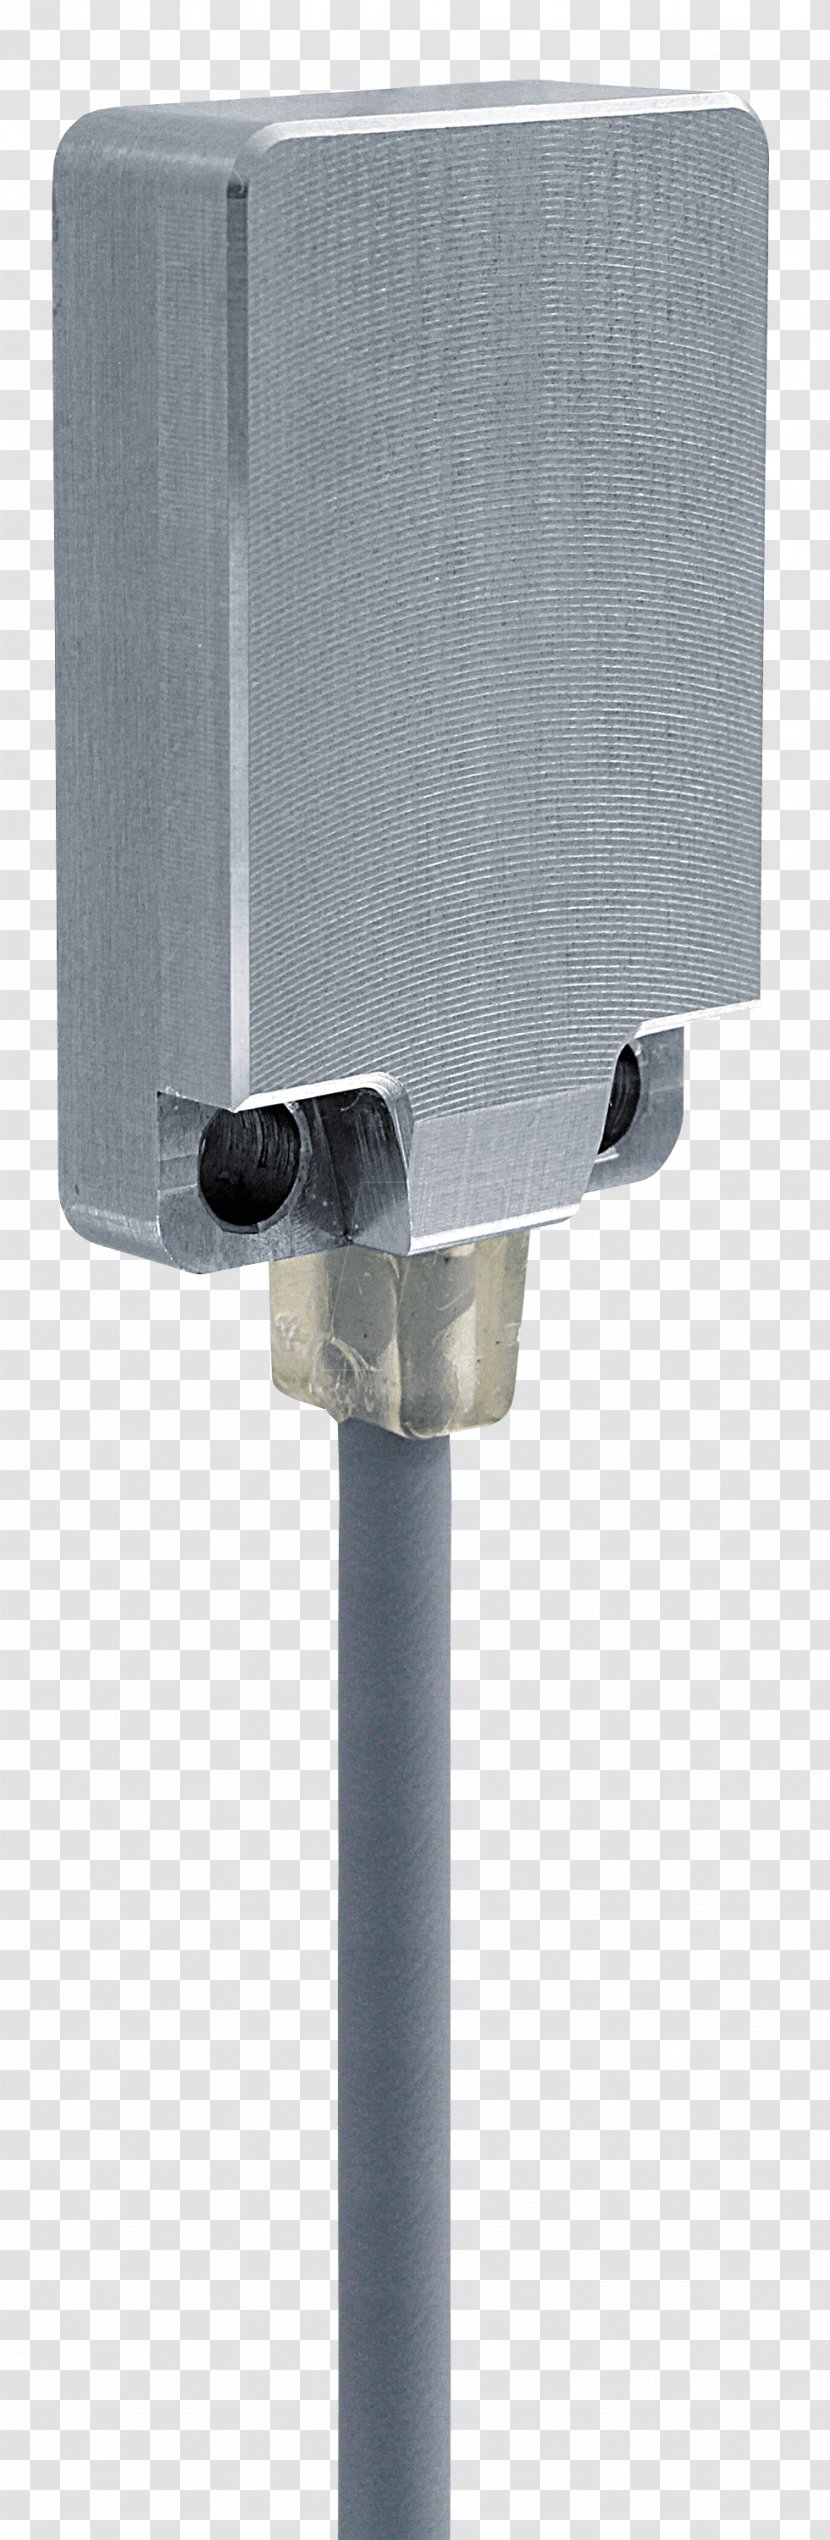 Proximity Sensor Näherungsschalter - Millimeter - Design Transparent PNG